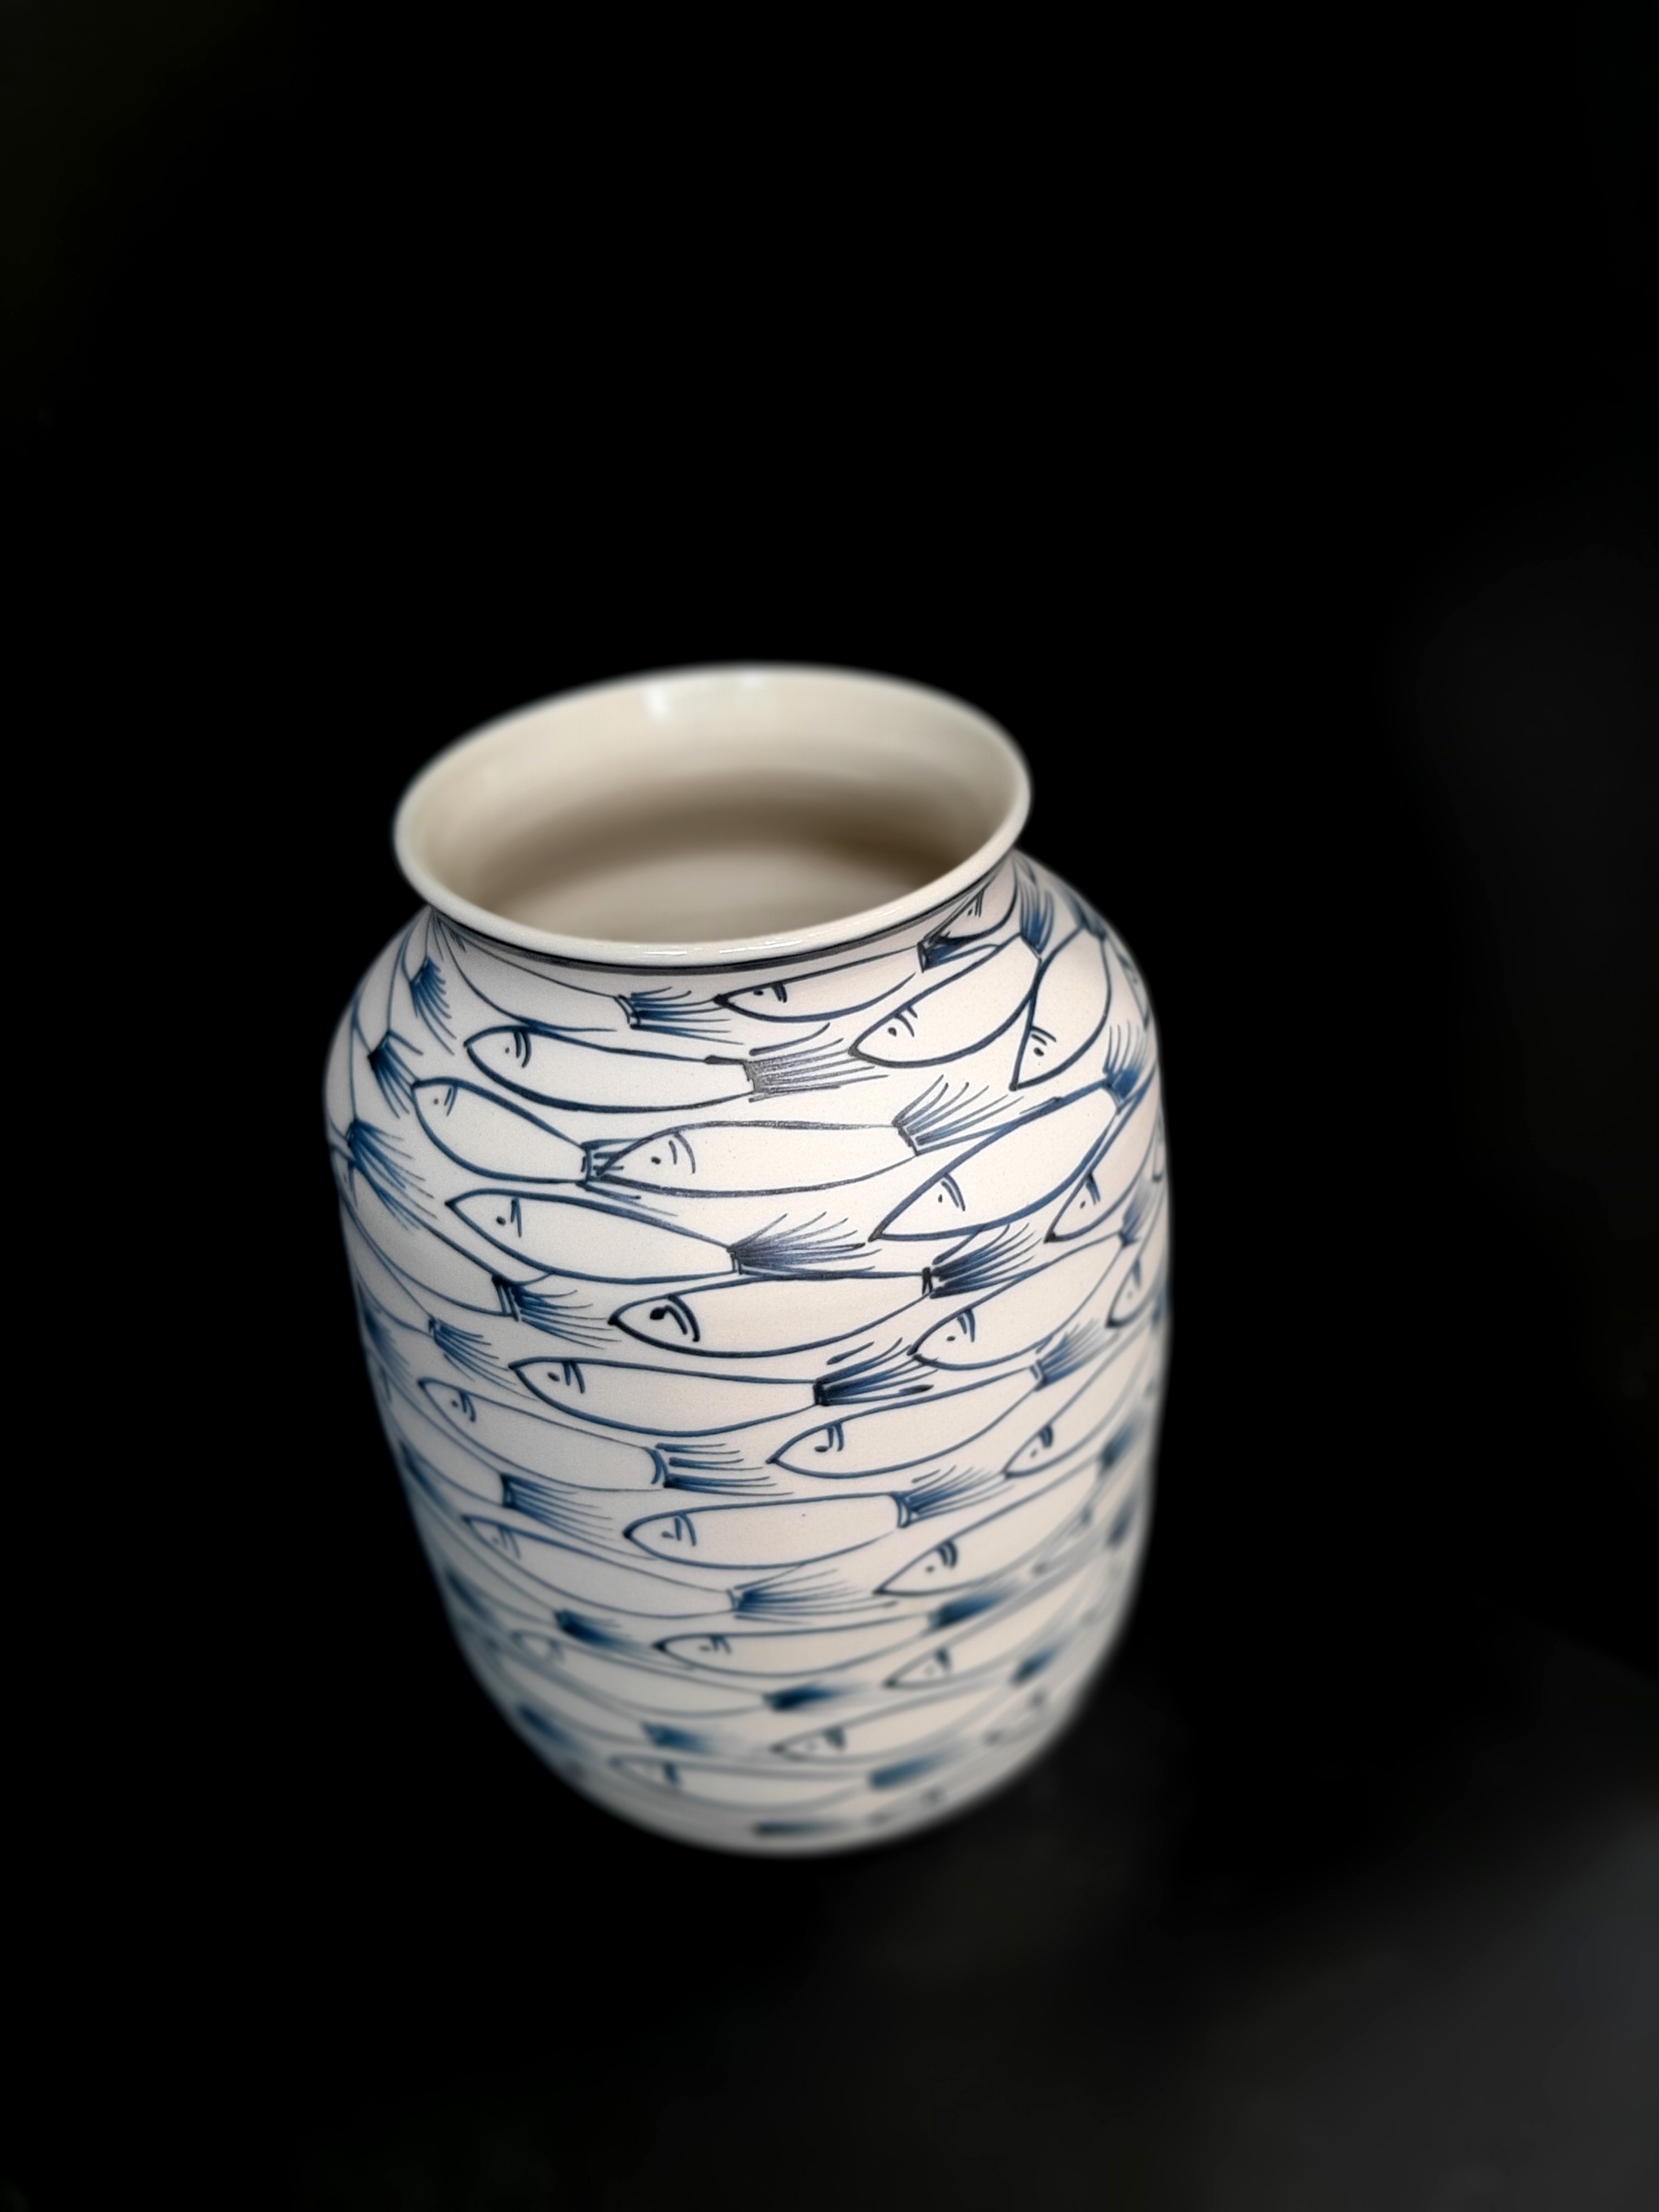 Fishes vase 1-  Bình gốm cắm hoa vẽ cá đàn, sản phẩm gốm thủ công, vuốt và vẽ tay, sản xuất tại xưởng gốm Authentic bat trang